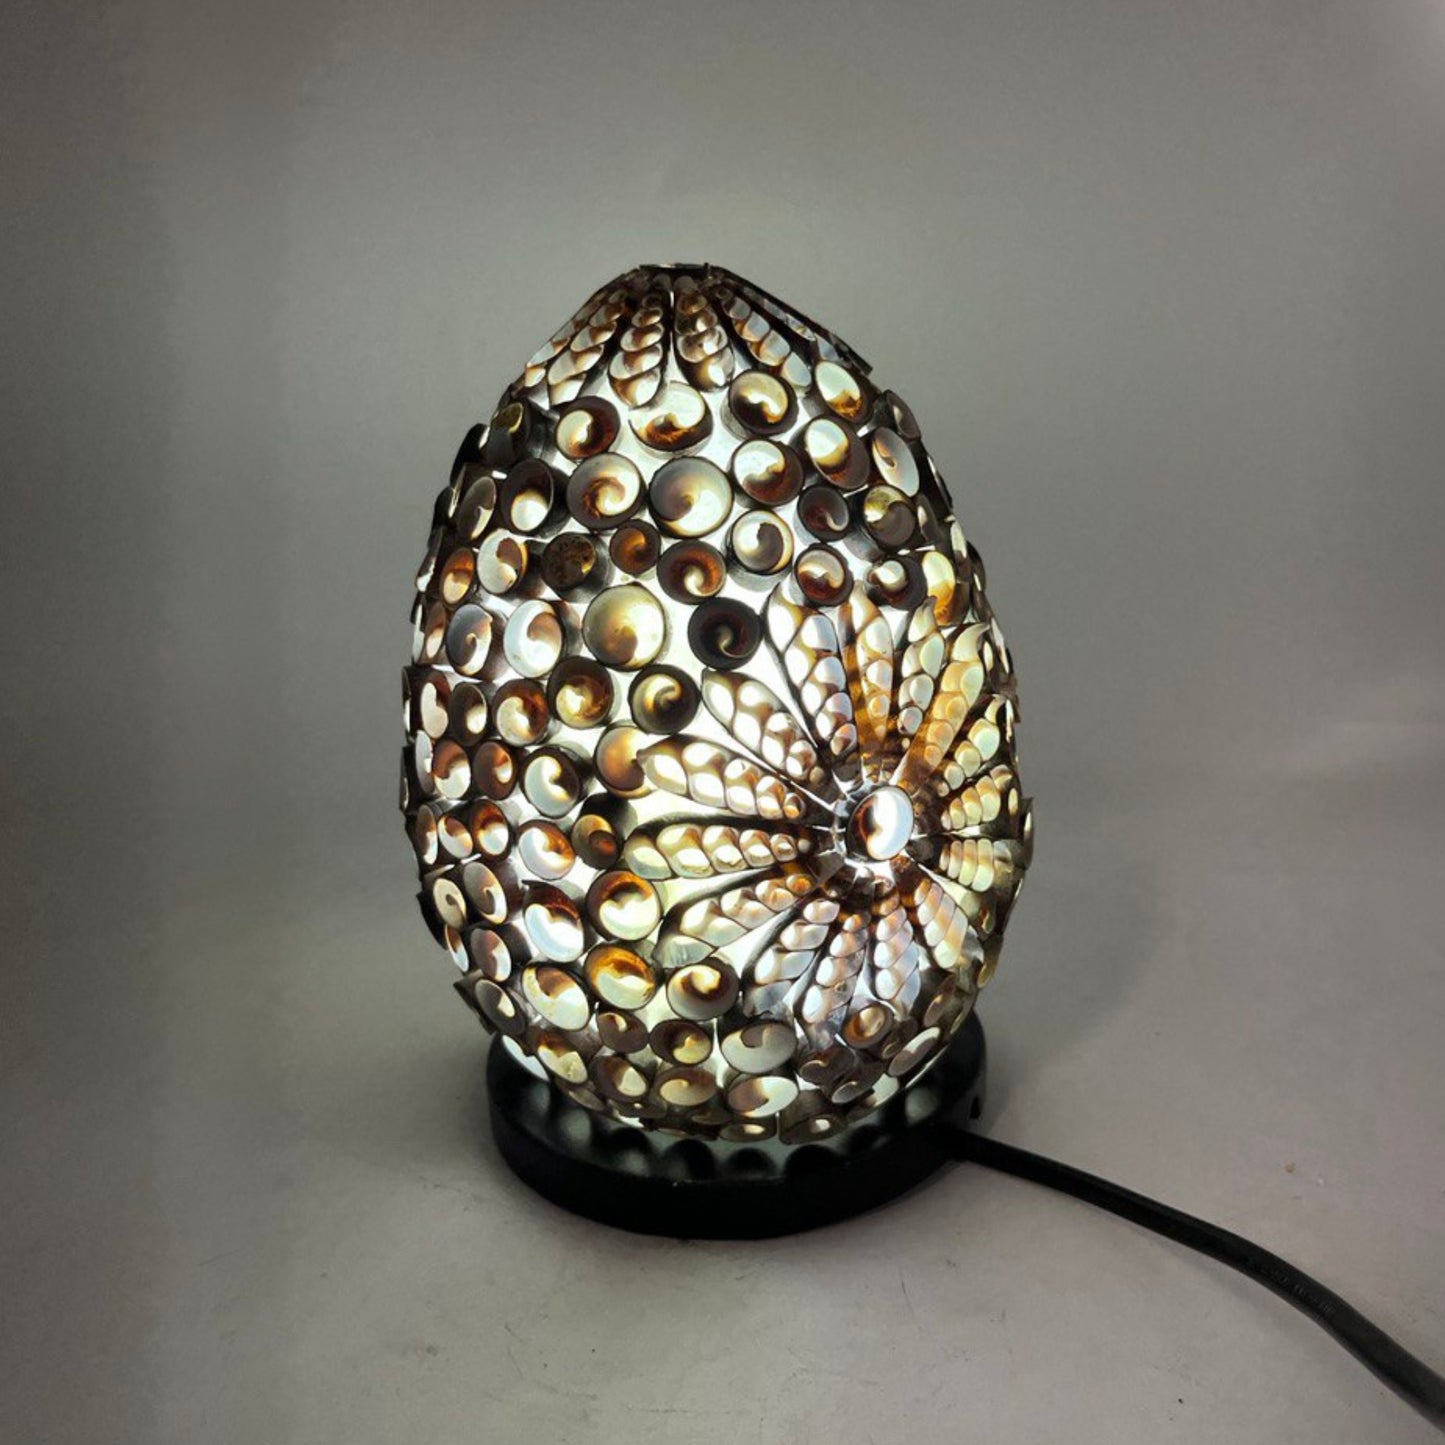 Boho Sea Shell Lamp - Chocolate Twist Oval - 15cm